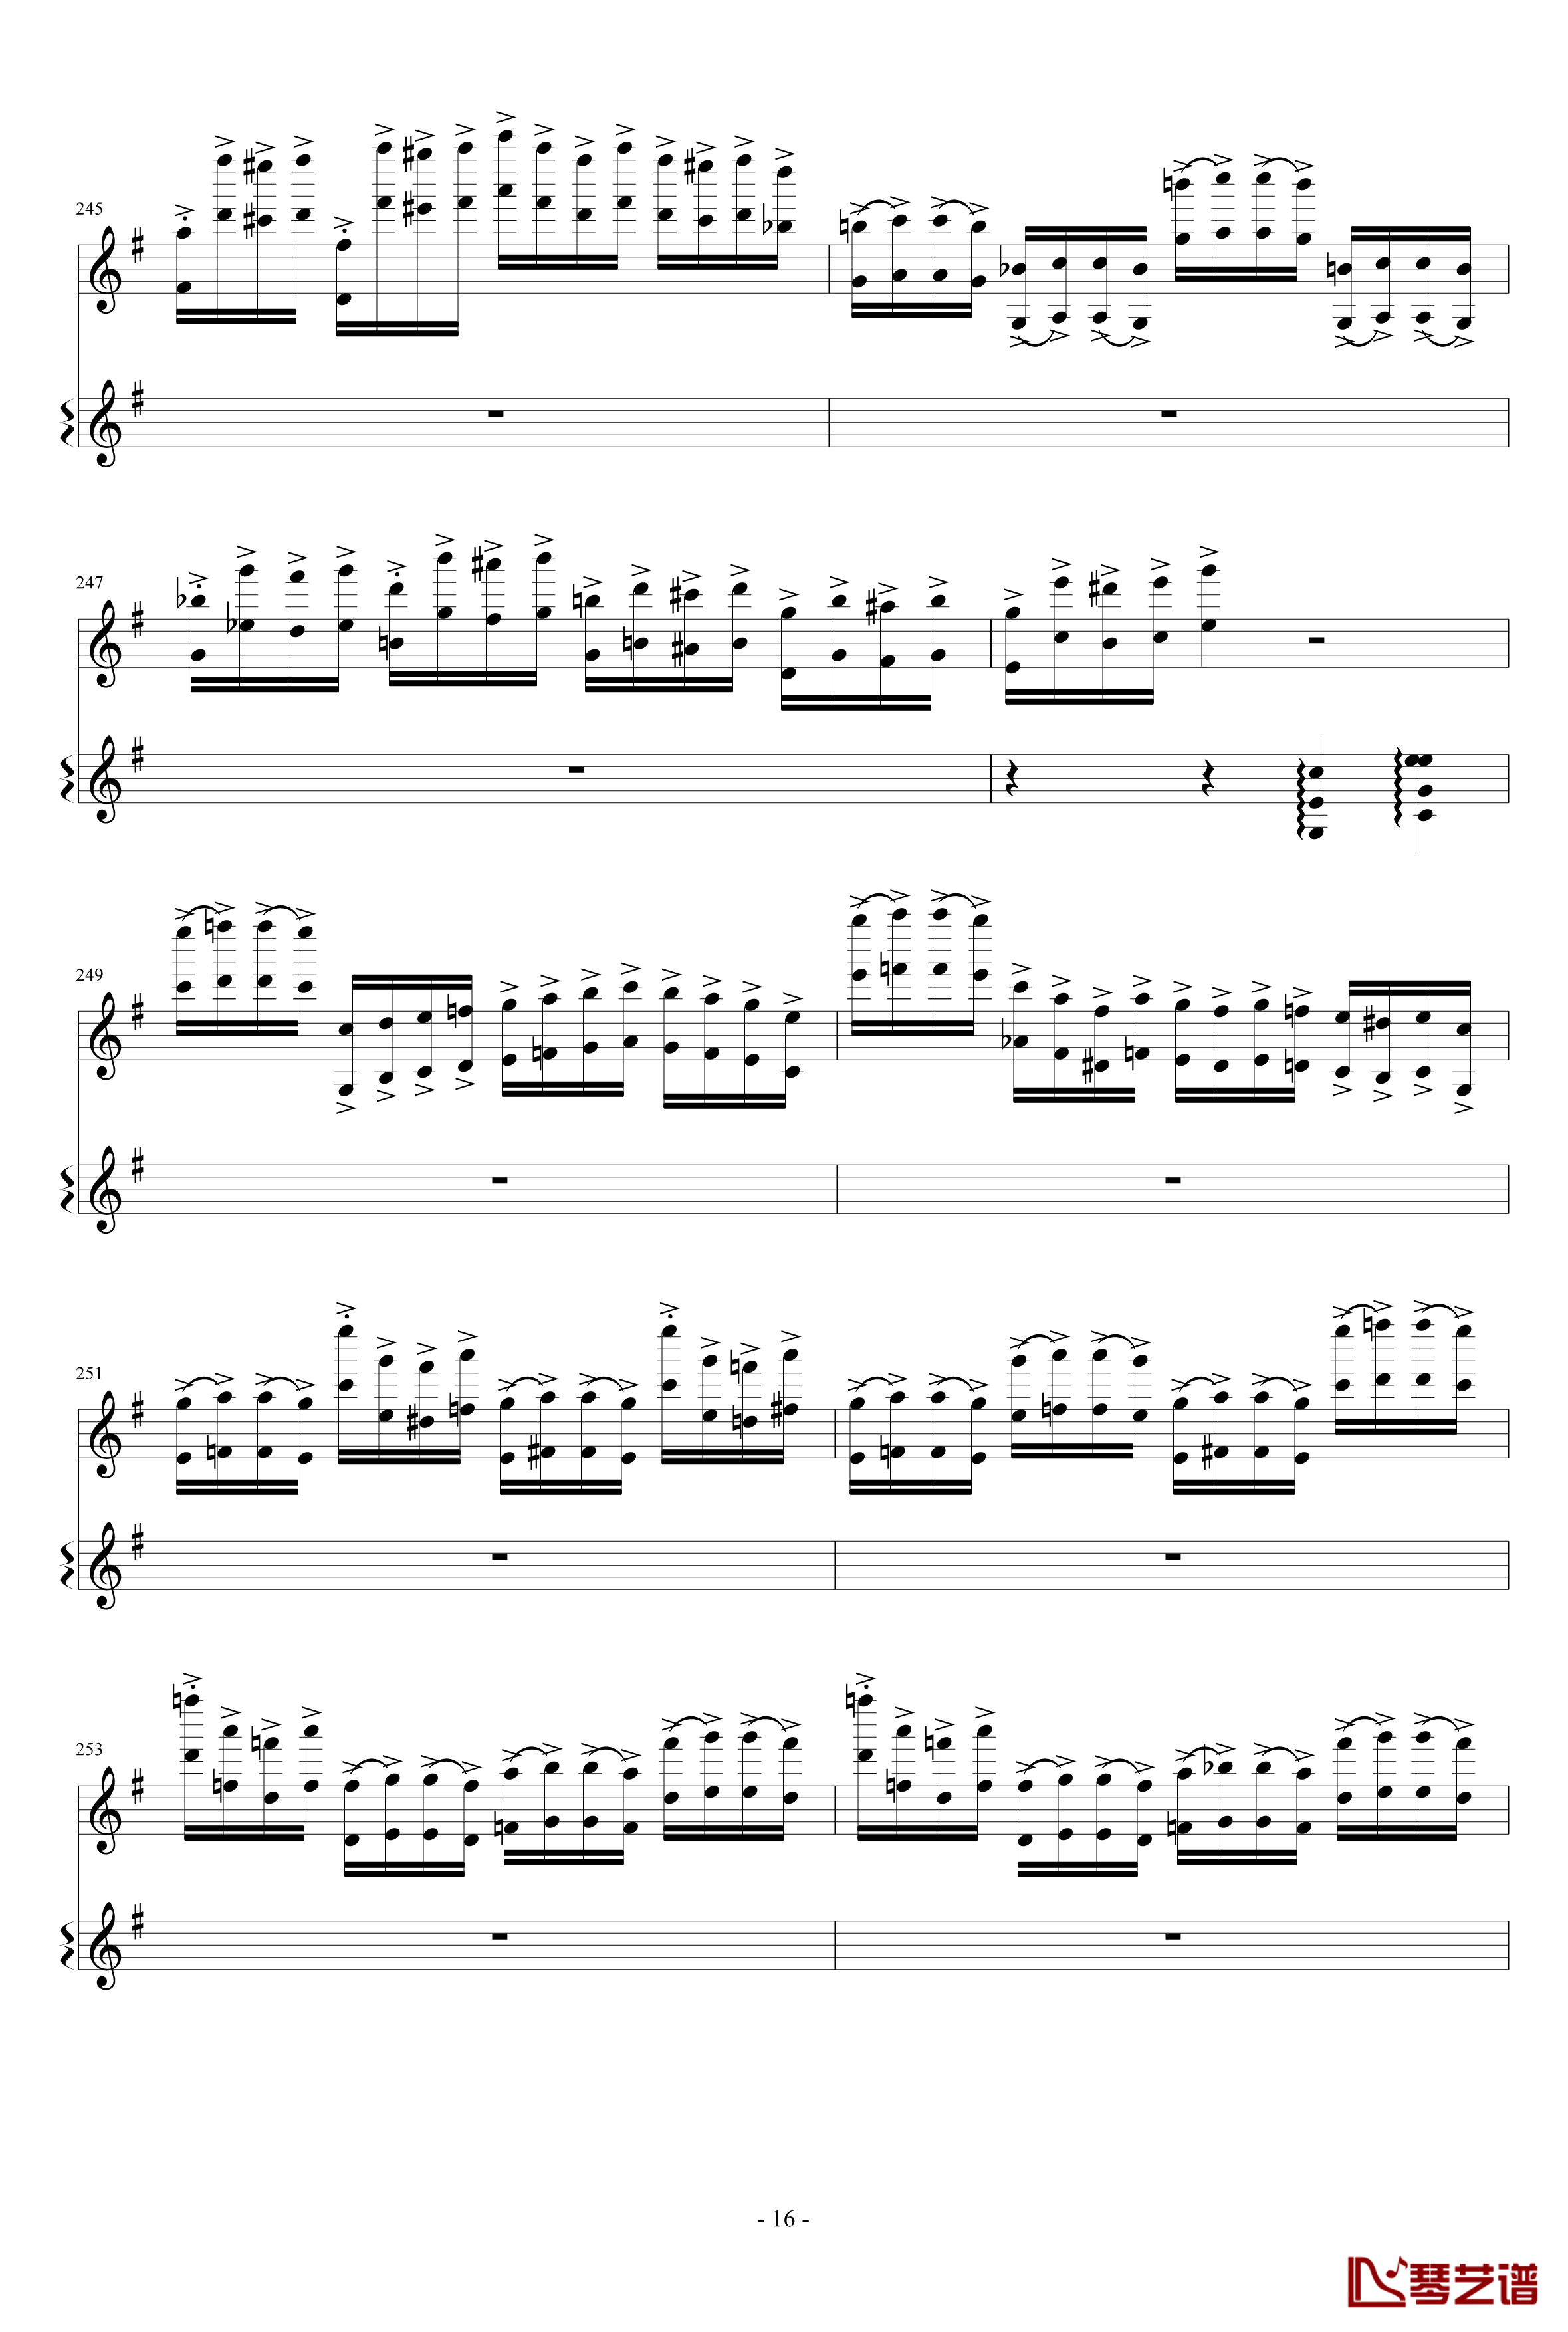 意大利国歌变奏曲钢琴谱-只修改了一个音-DXF16